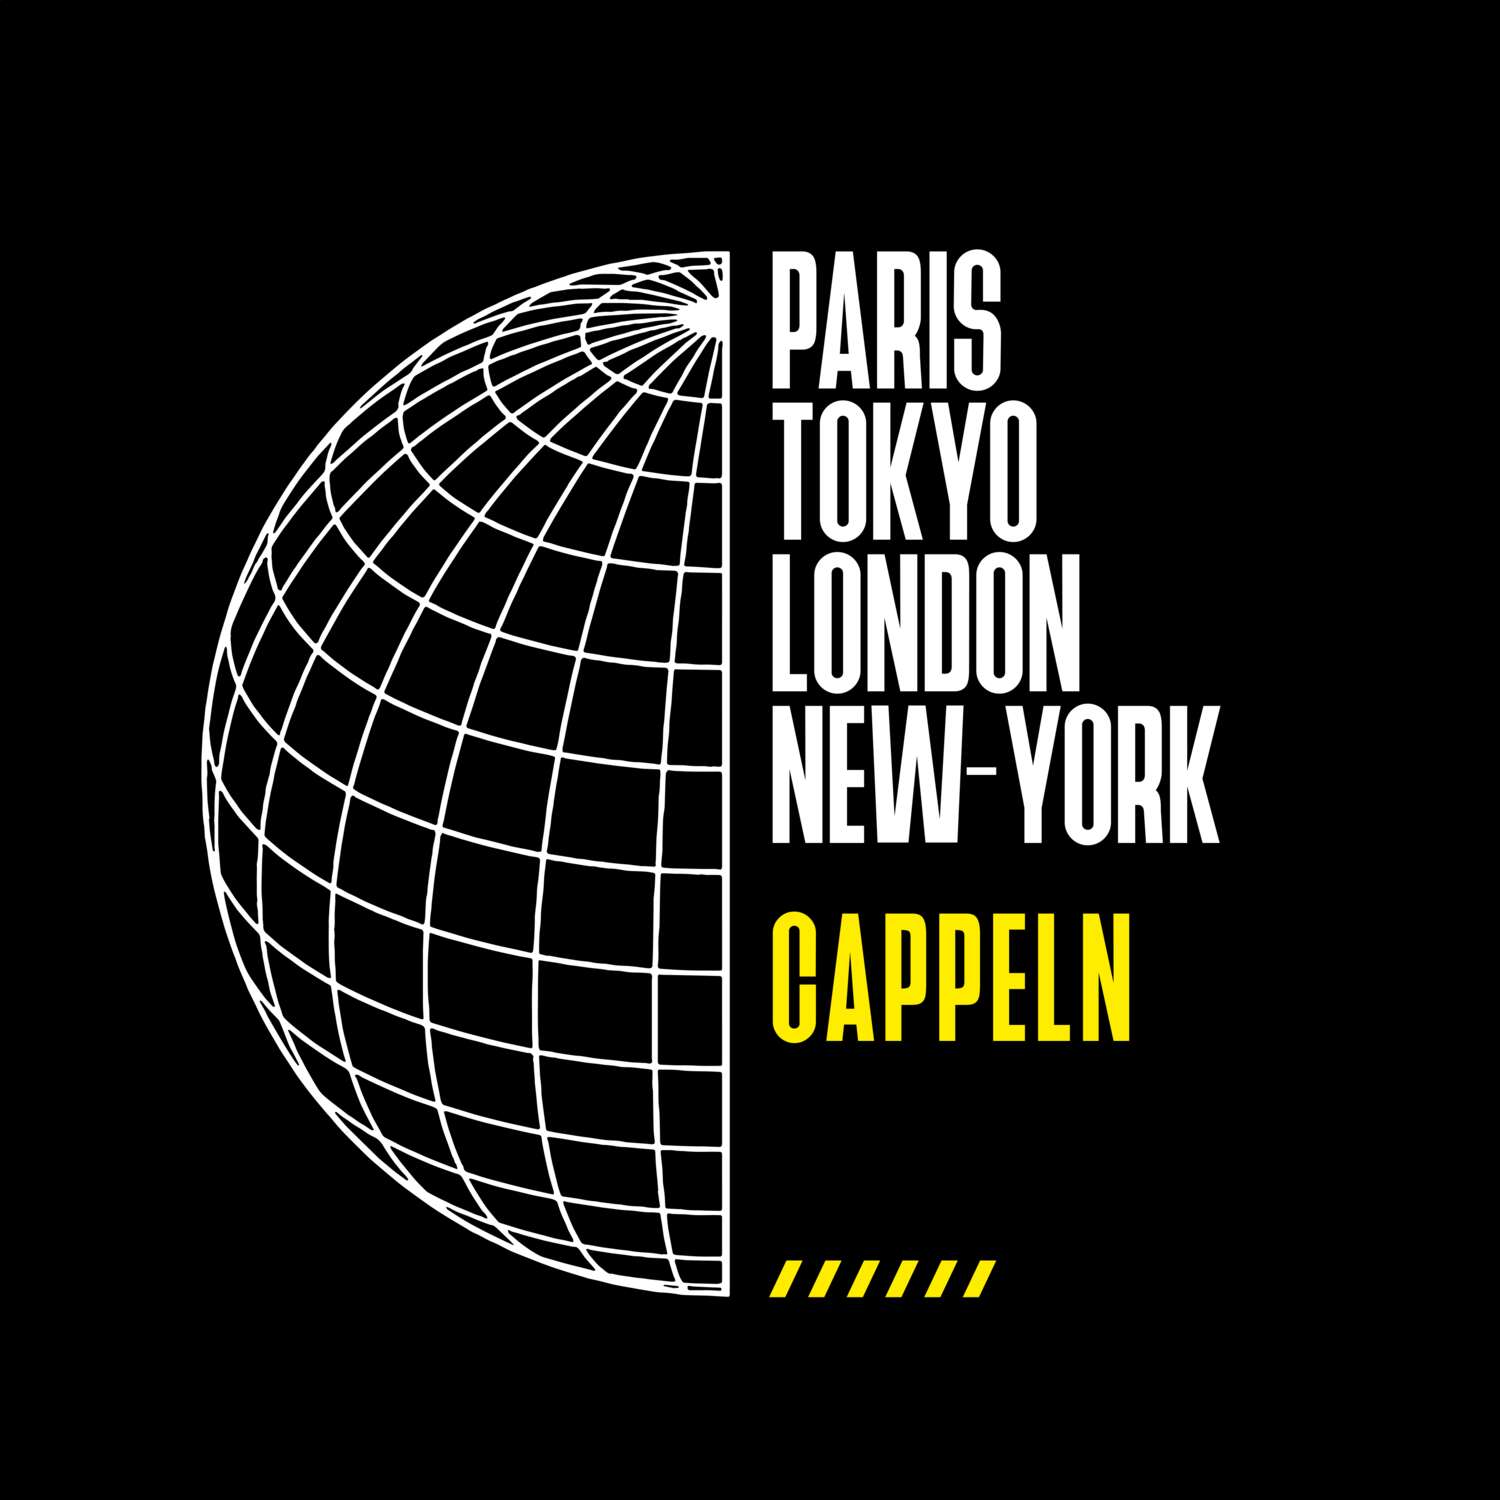 Cappeln T-Shirt »Paris Tokyo London«